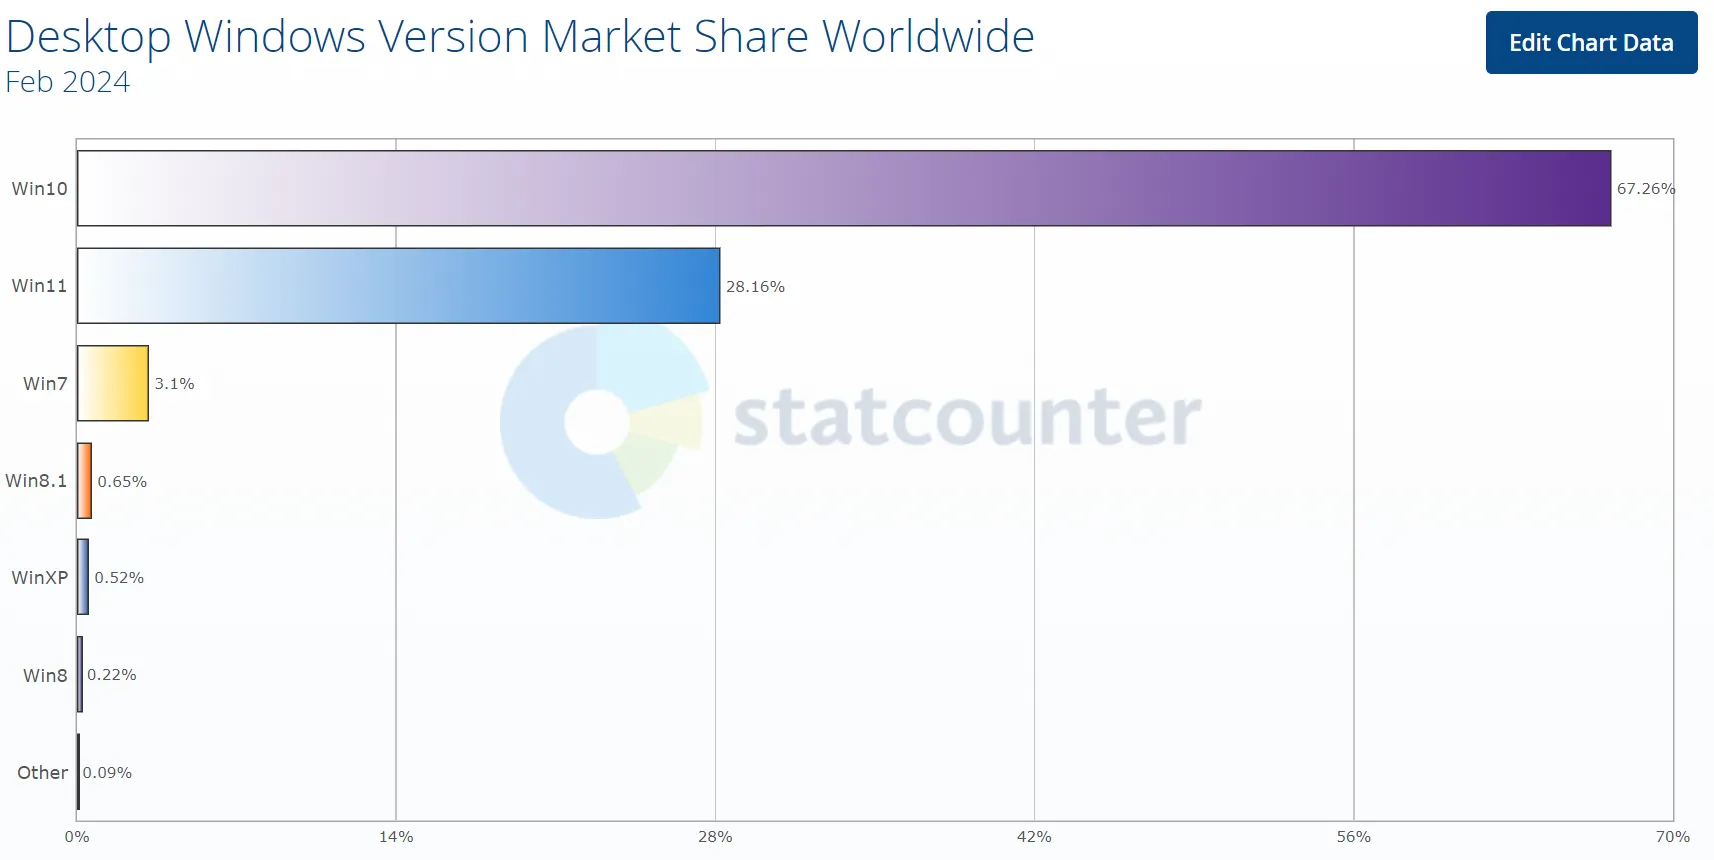 Participação no mercado da versão desktop do Windows em todo o mundo